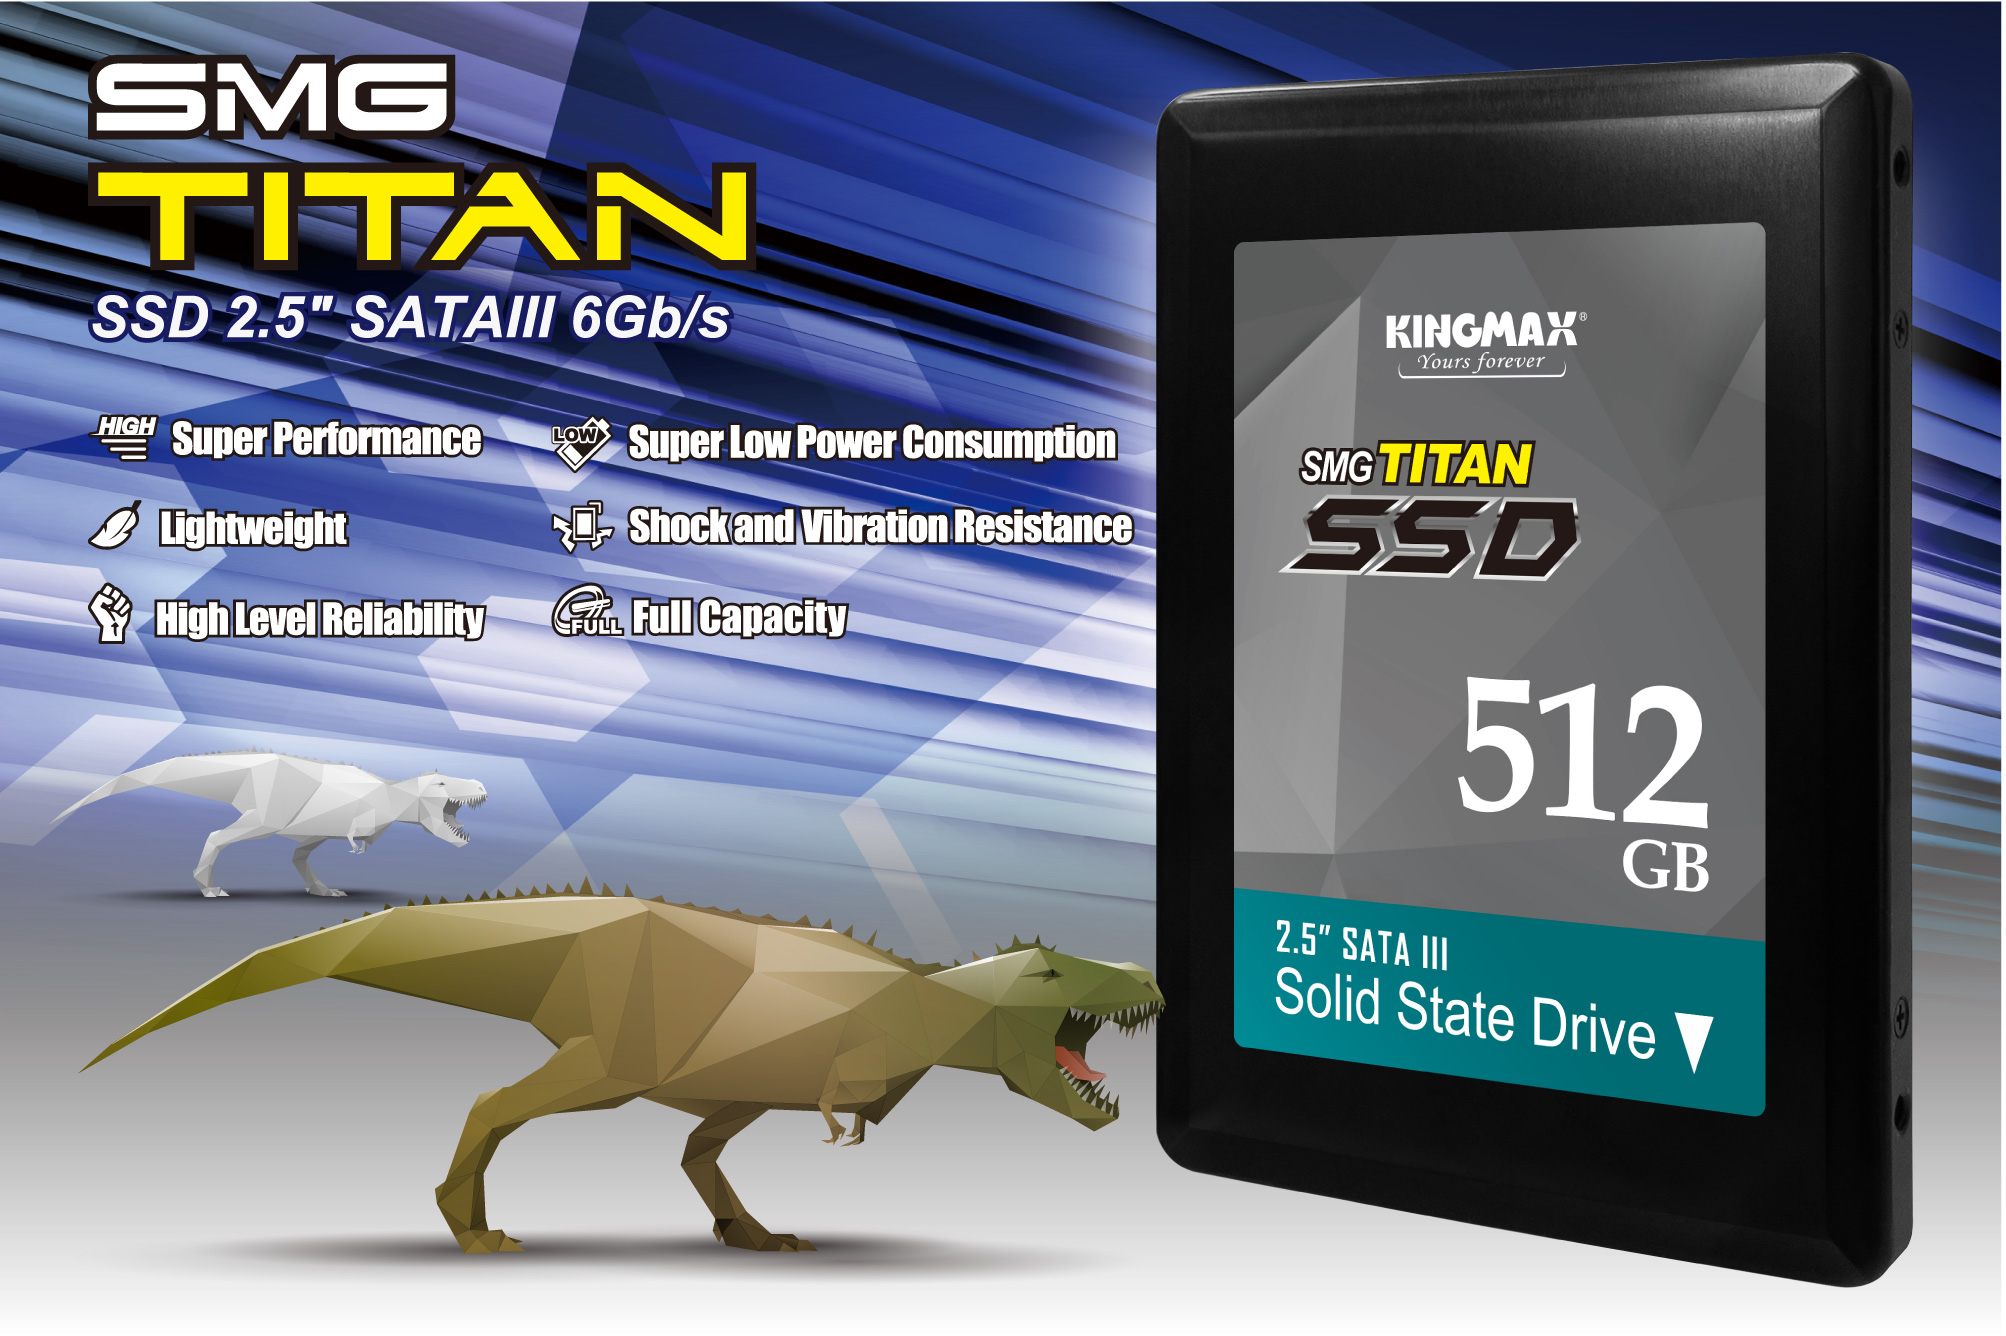 SSD- SMG Titan